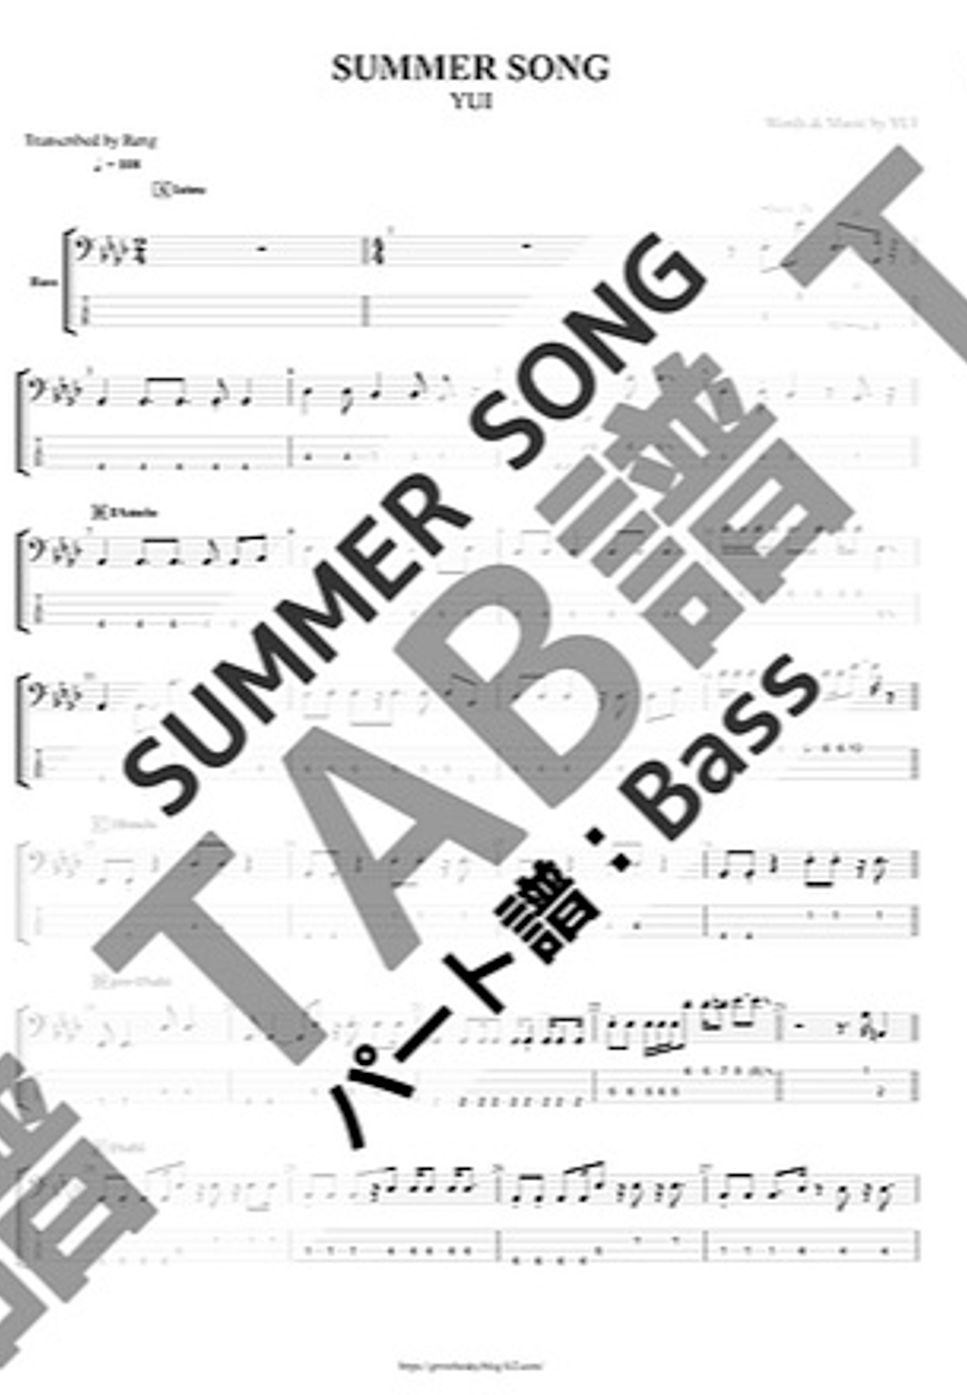 YUI - SUMMER SONG (Bass/TAB譜) by Score by Reng